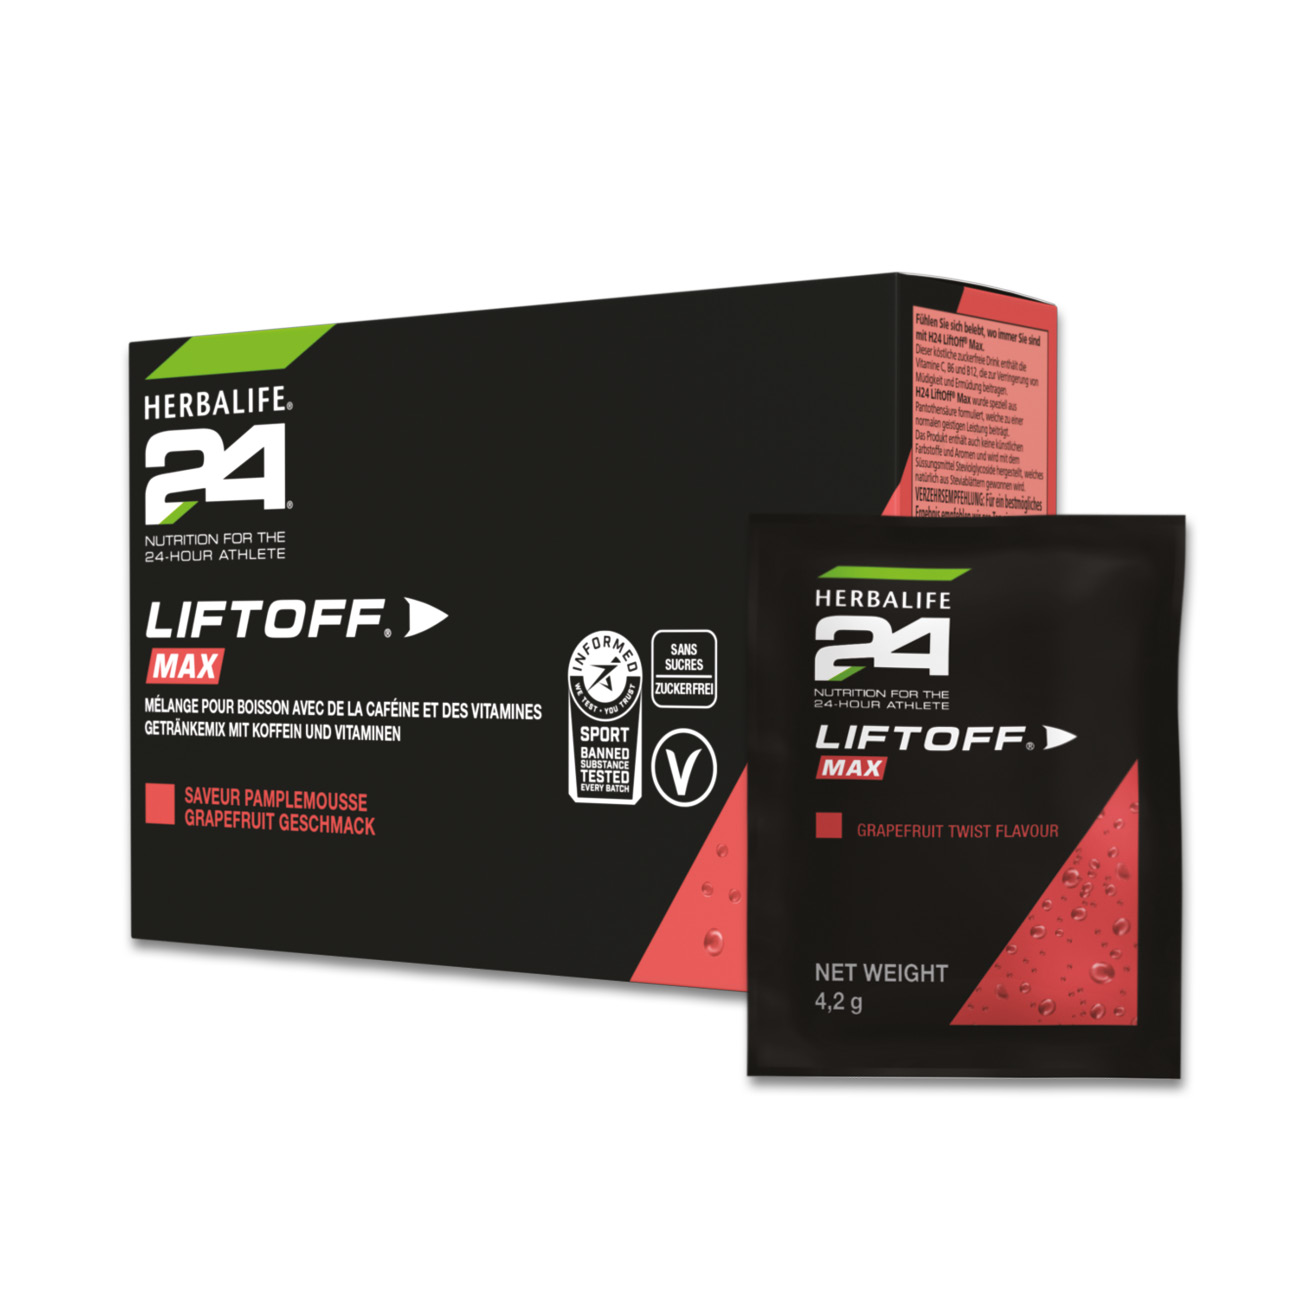 Herbalife24® LiftOff® Max ist als Karton mit 10 einzelnen Portionspackungen erhältlich und eignet sich so perfekt für unterwegs.